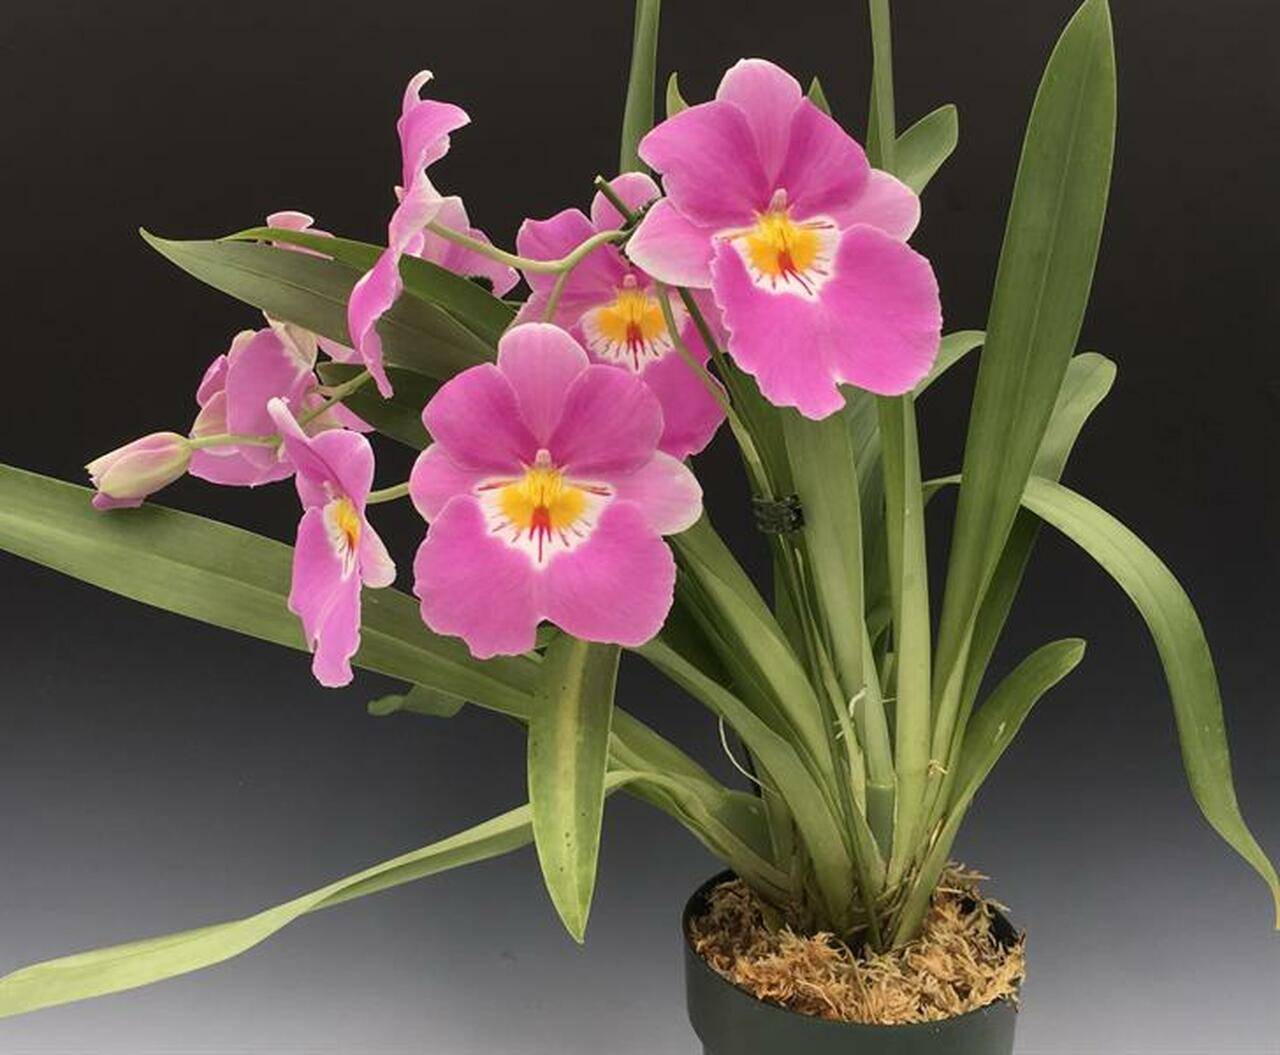 Орхидея мильтония: описание цветка с фото, правила посадки и ухода в домашних условиях, а также советы и рекомендации для начинающих цветоводов